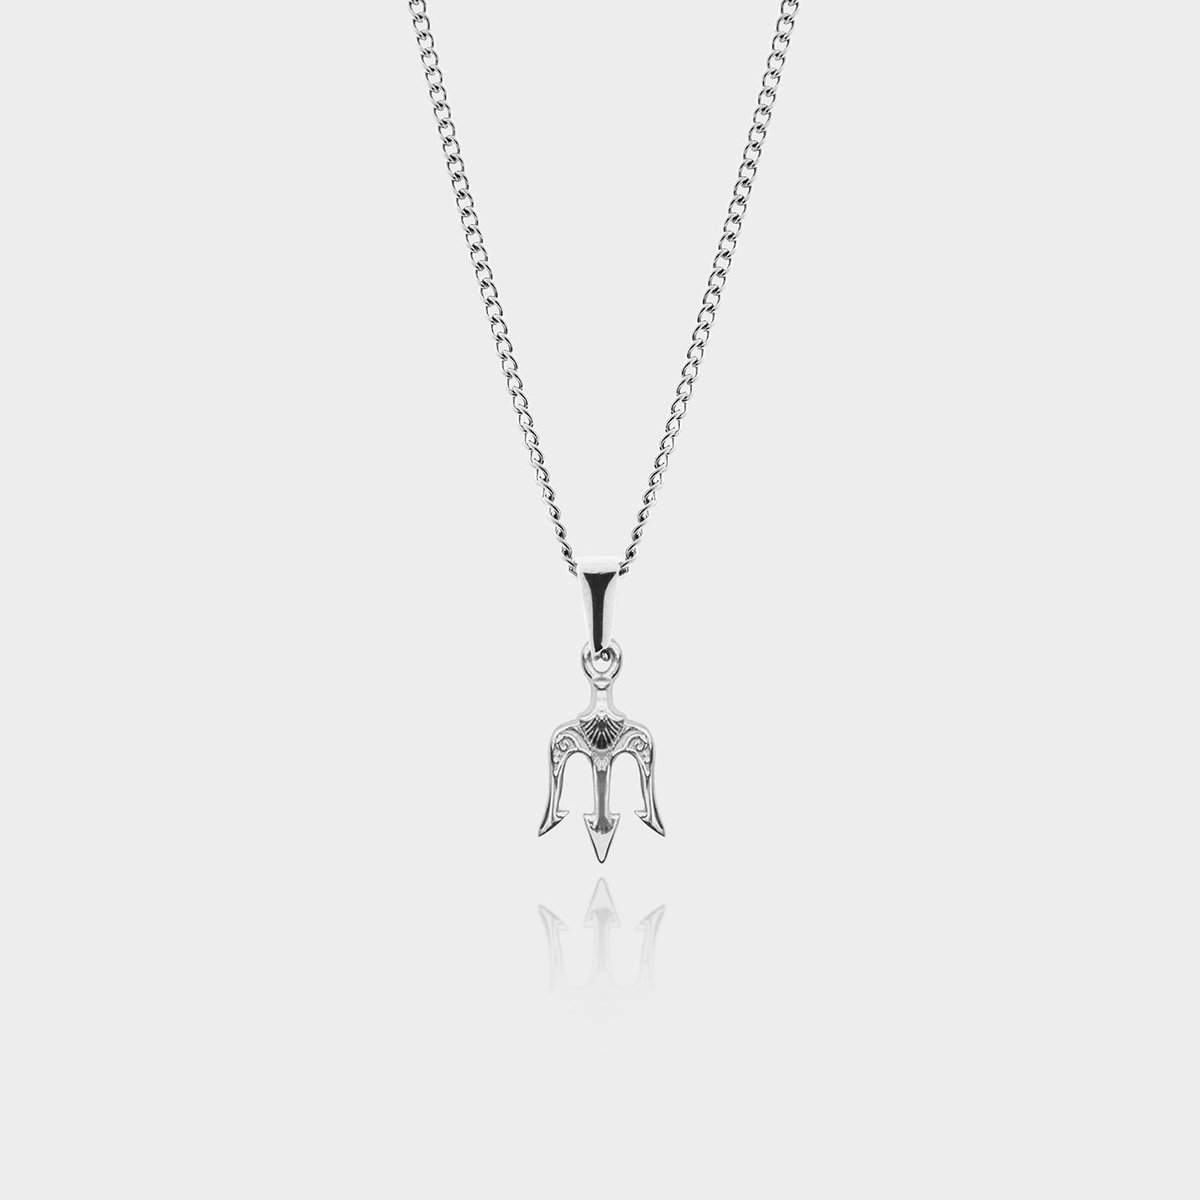 Drietand Hanger Ketting - Zilveren Ketting - 50 cm lang - Ketting Heren met Hanger - Griekse Mythen - Olympus Jewelry